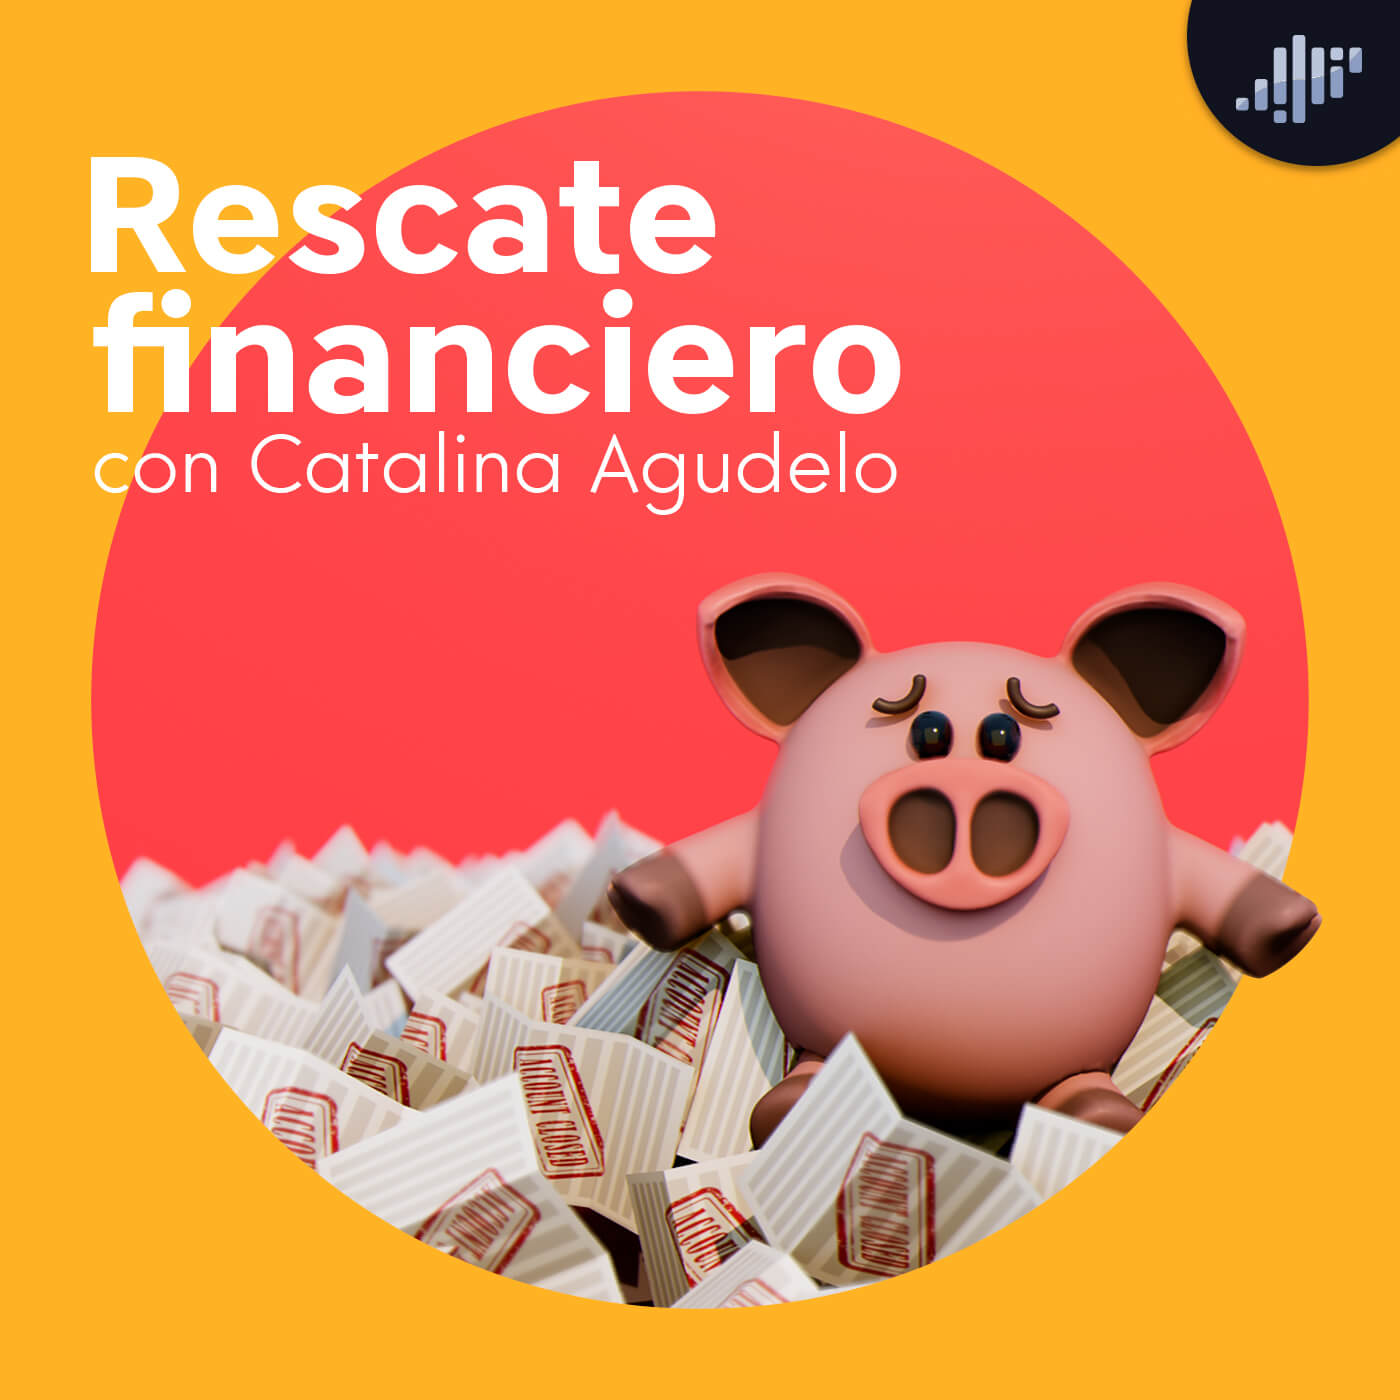 Rescate financiero con Catalina Agudelo